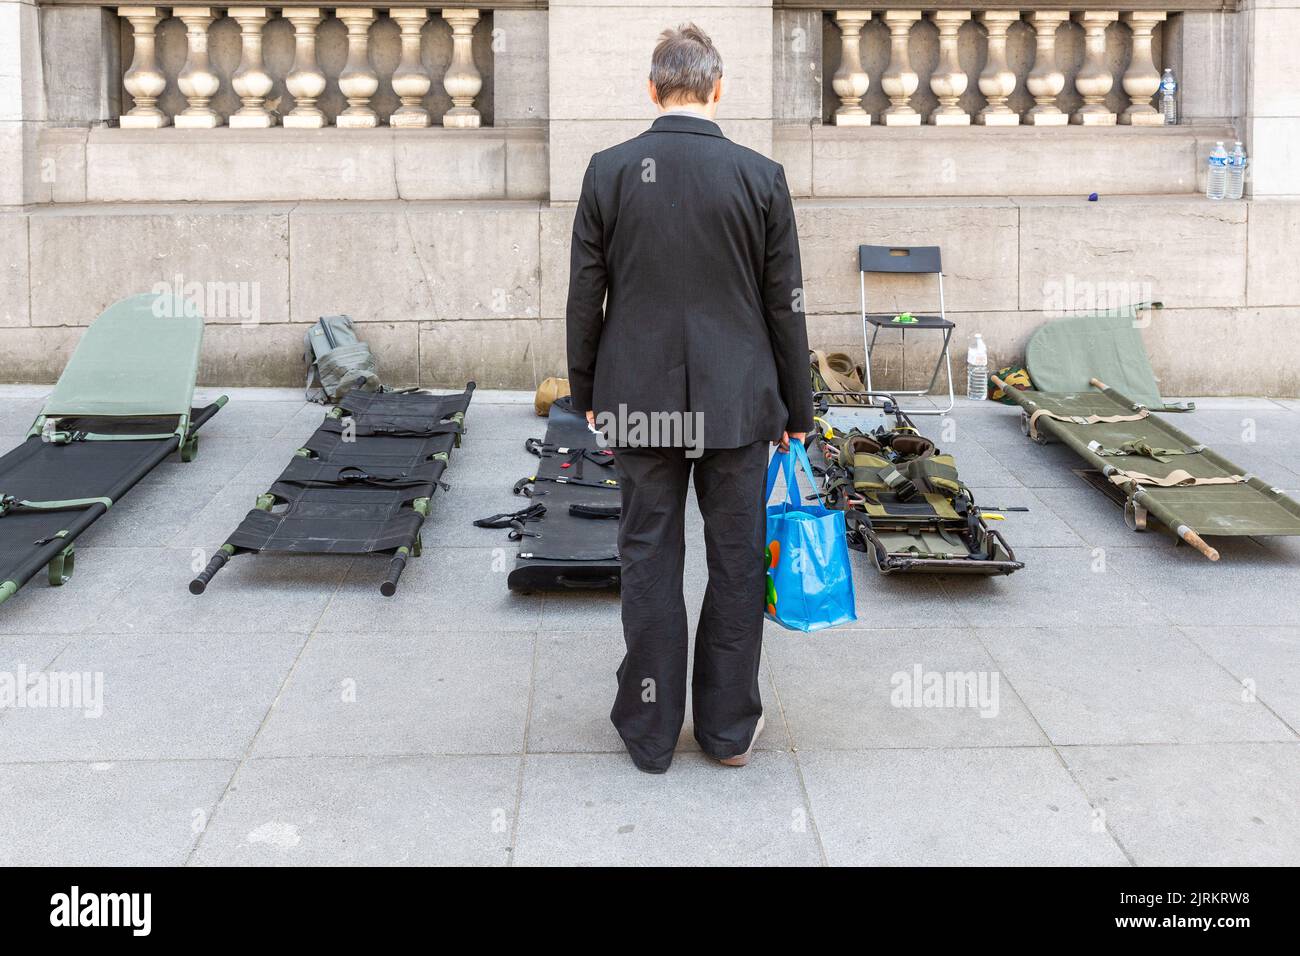 Hombre llevando una bolsa azul mirando algunas camillas del servicio de la Cruz Roja del Ejército. Foto de stock